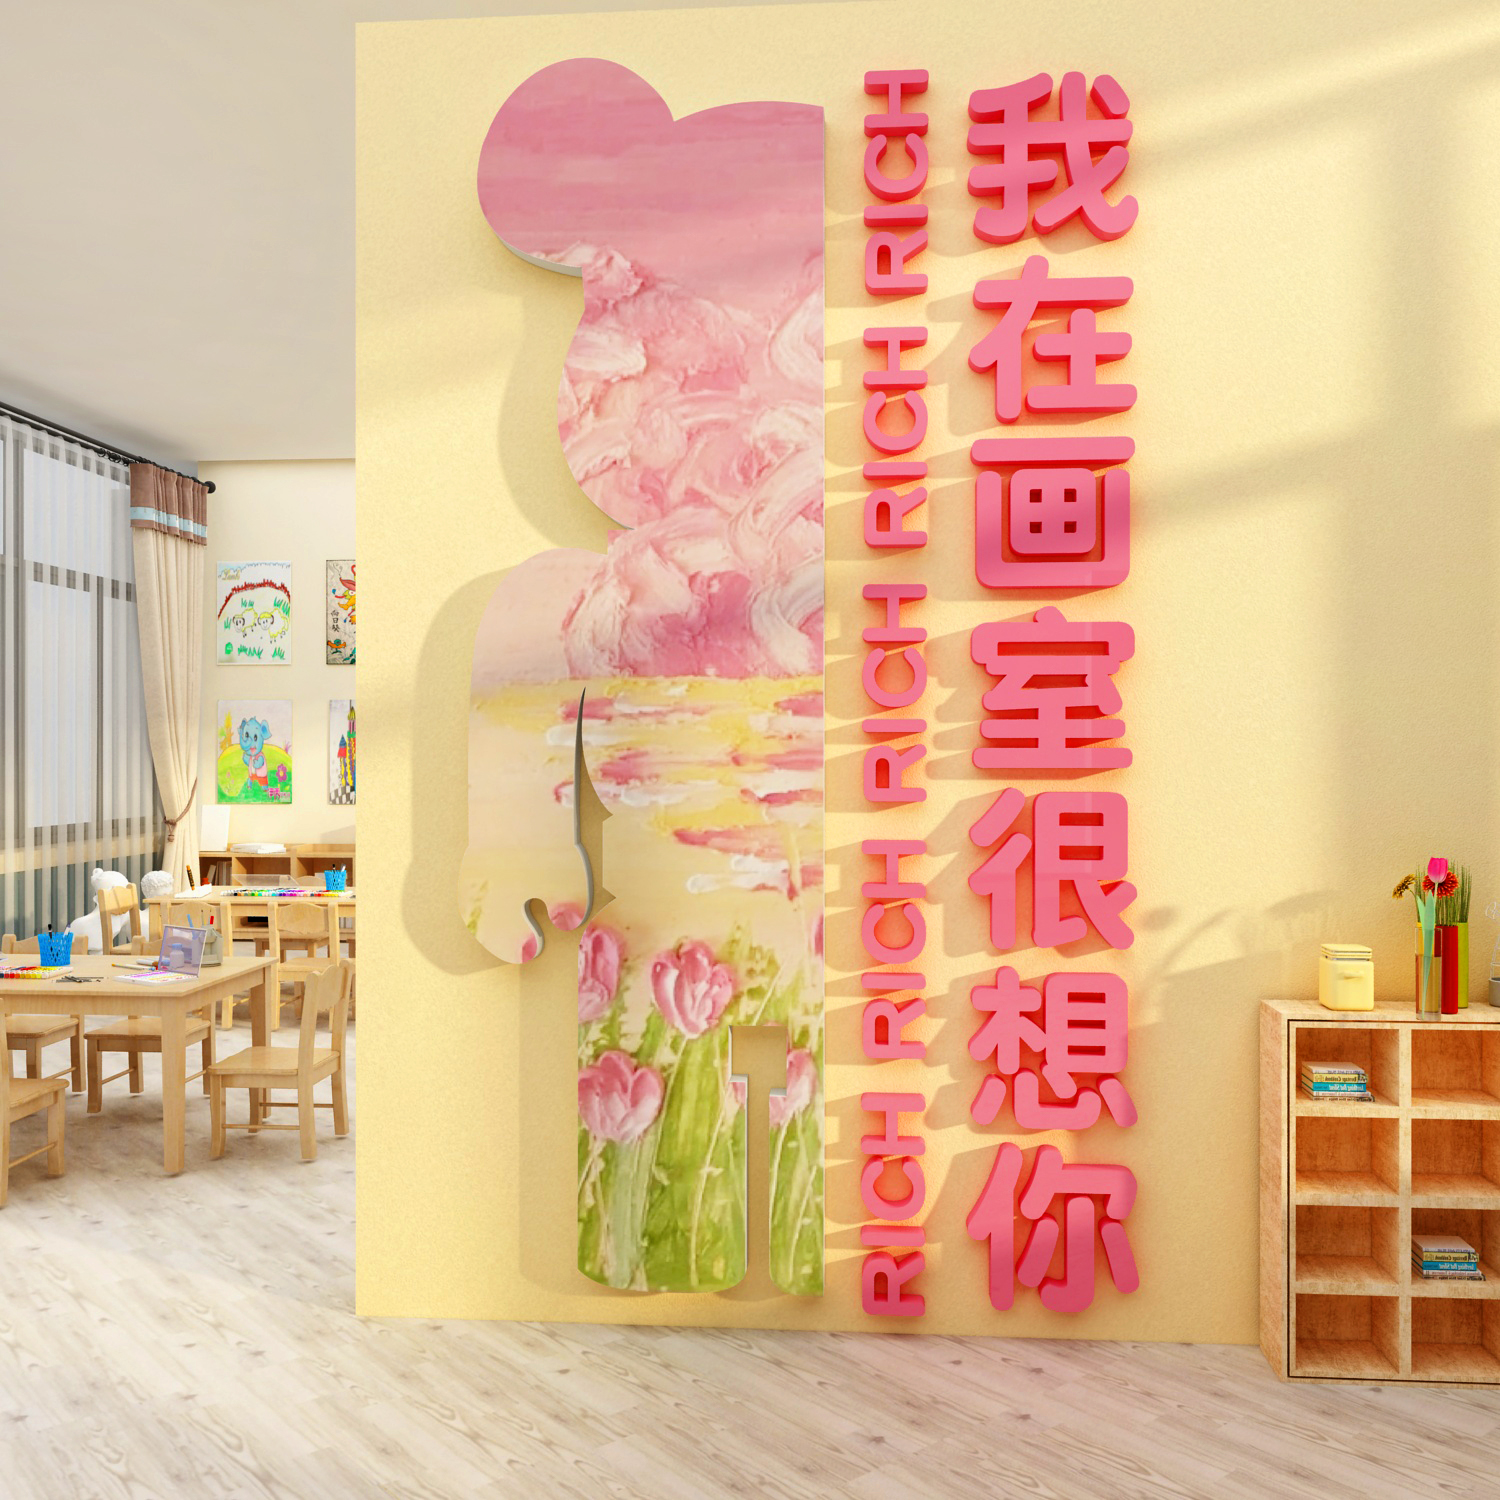 美术教室布置装饰画室艺术培训机构班级互动墙面环创幼儿园文化墙